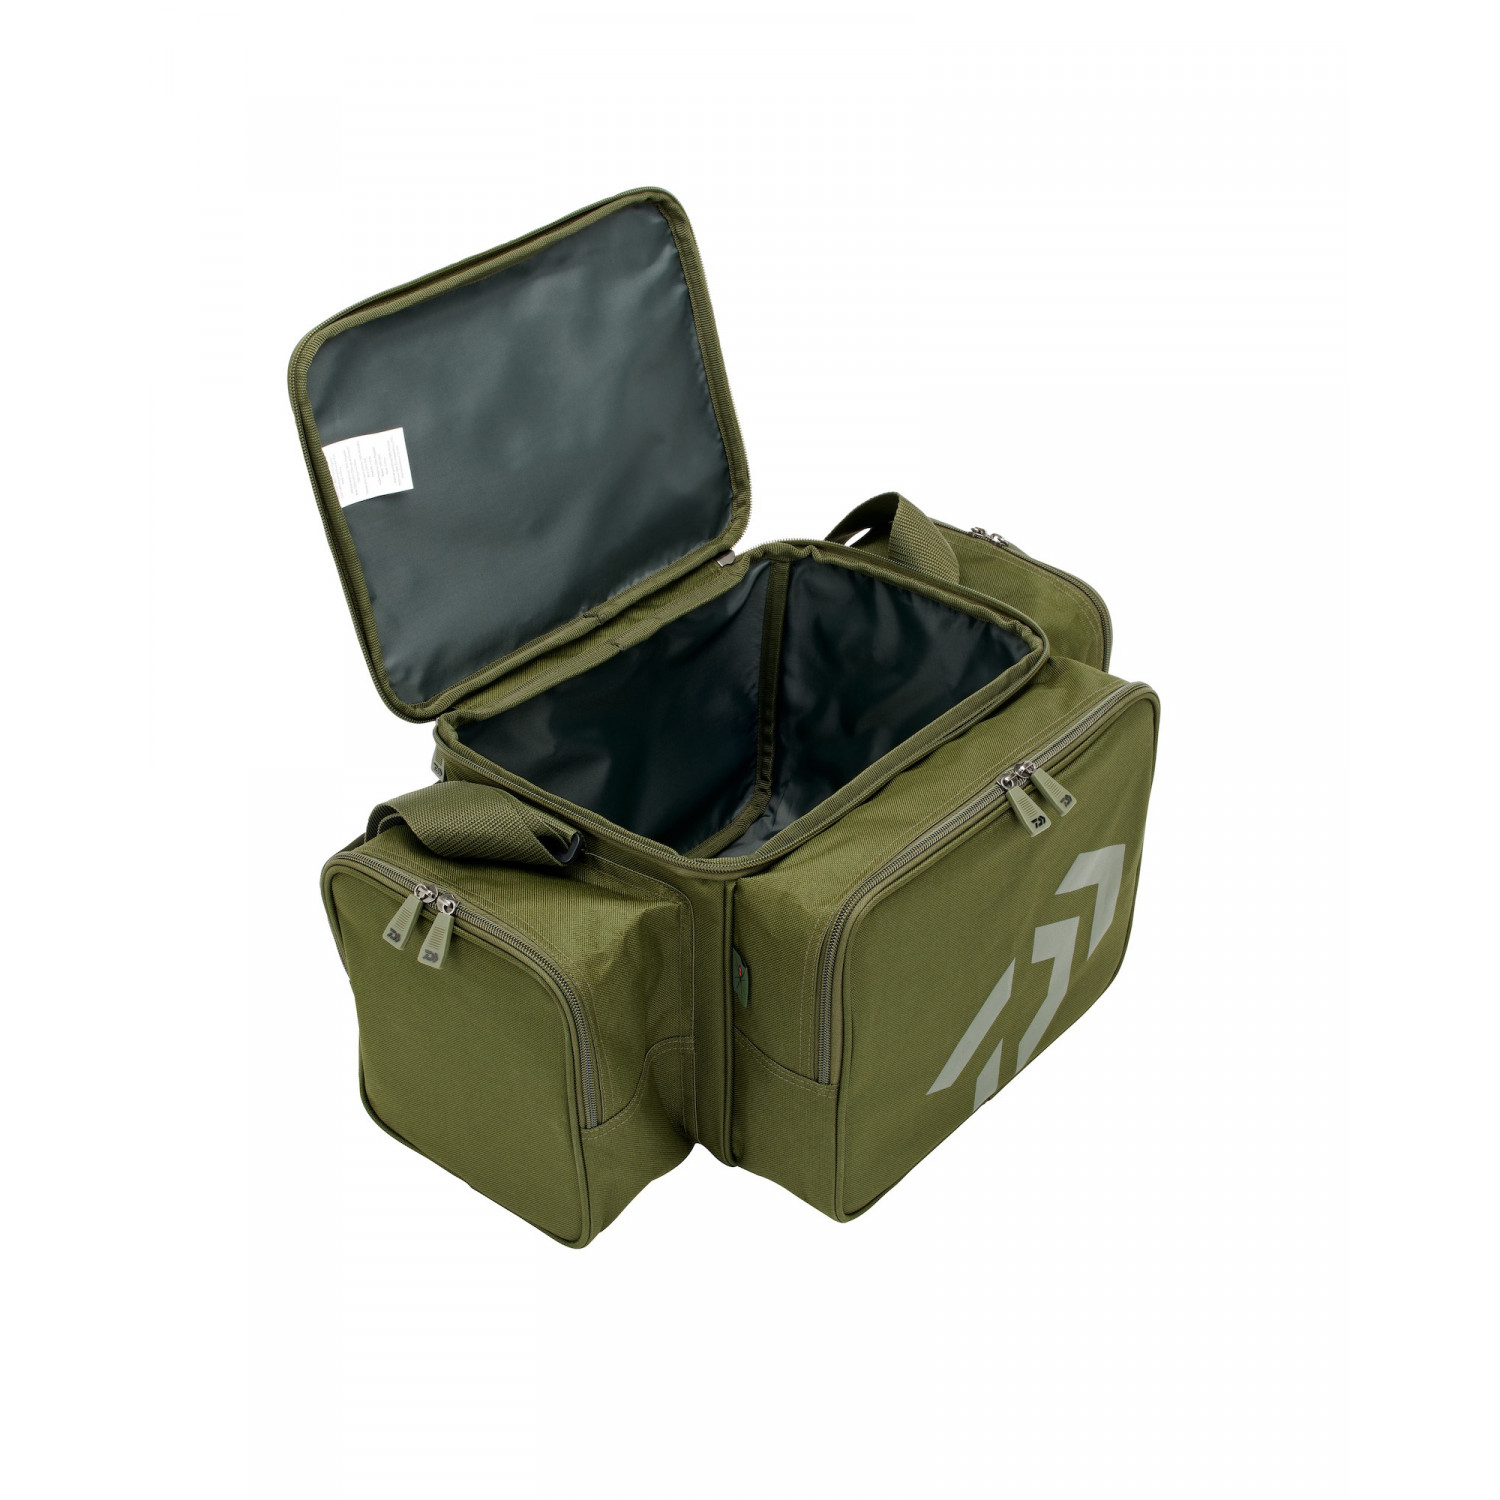 DAIWA Black Widow Compact Tackle Bag Green for Carp Fishing Gear